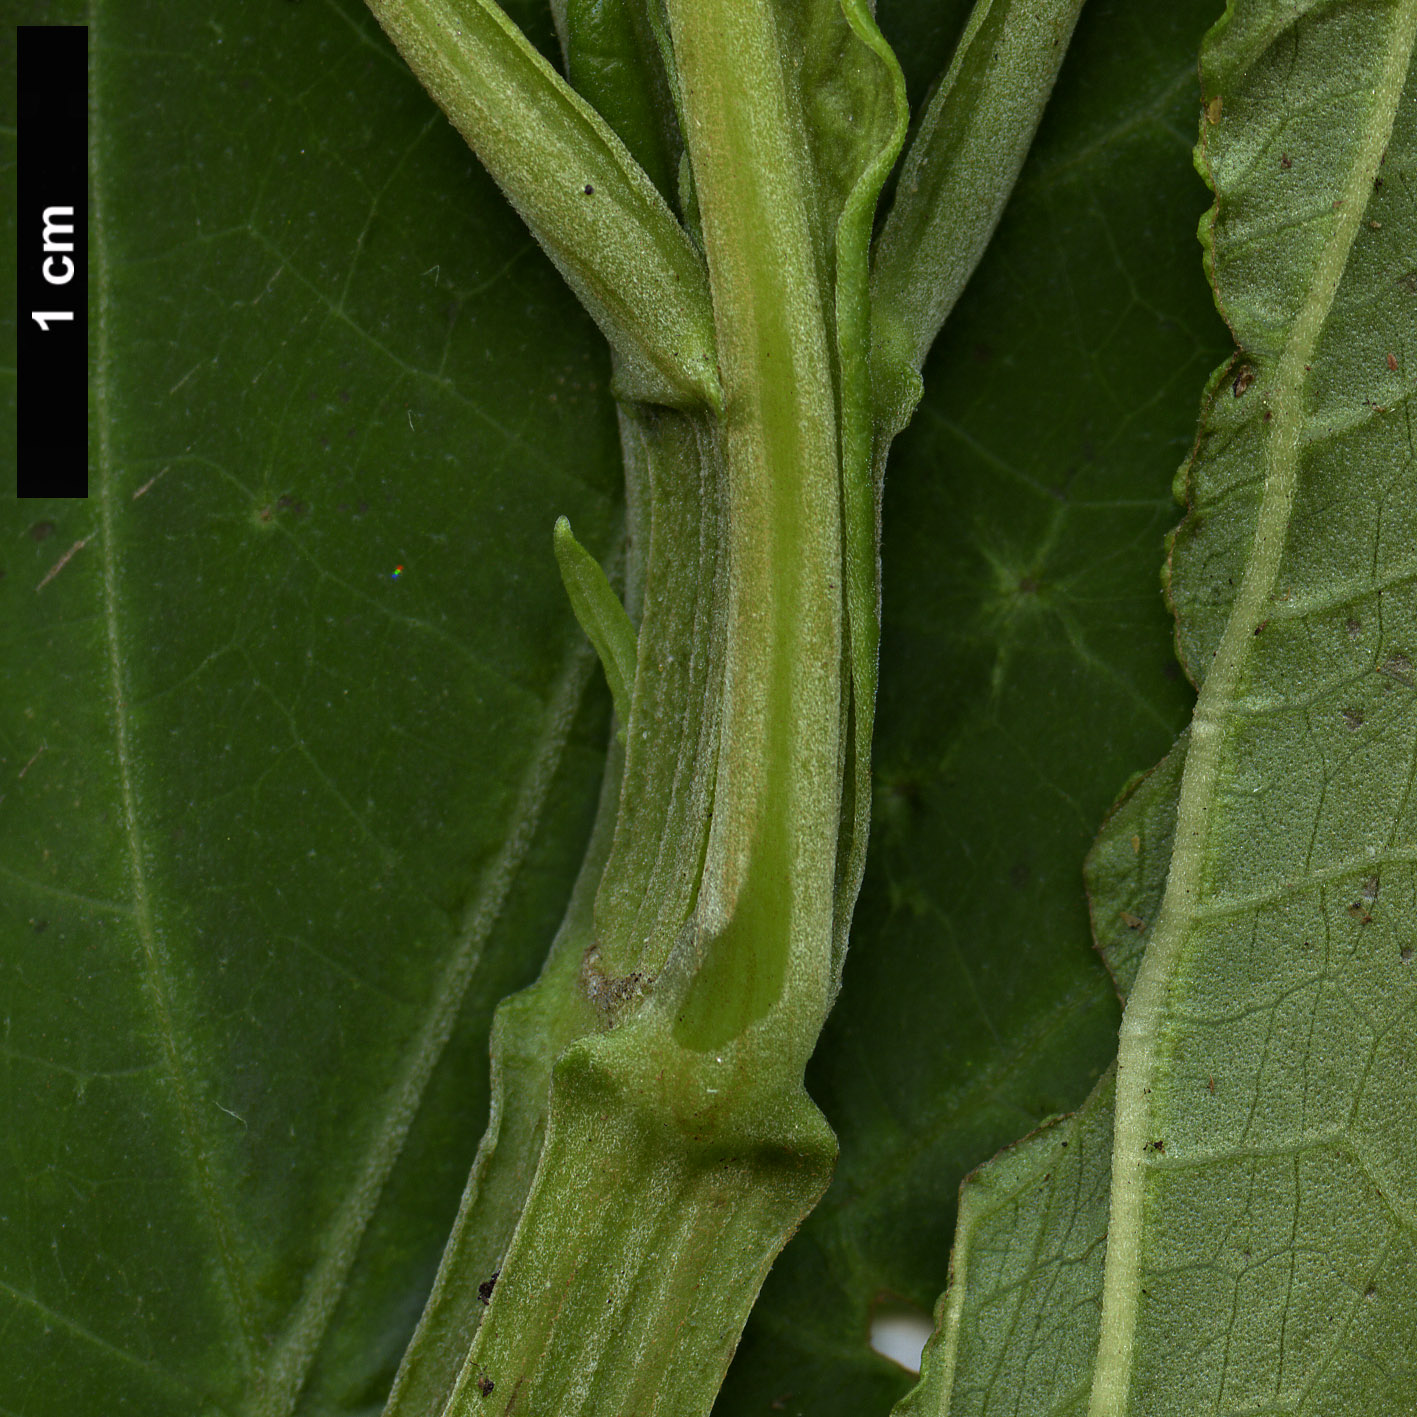 High resolution image: Family: Lamiaceae - Genus: Salvia - Taxon: divinorum